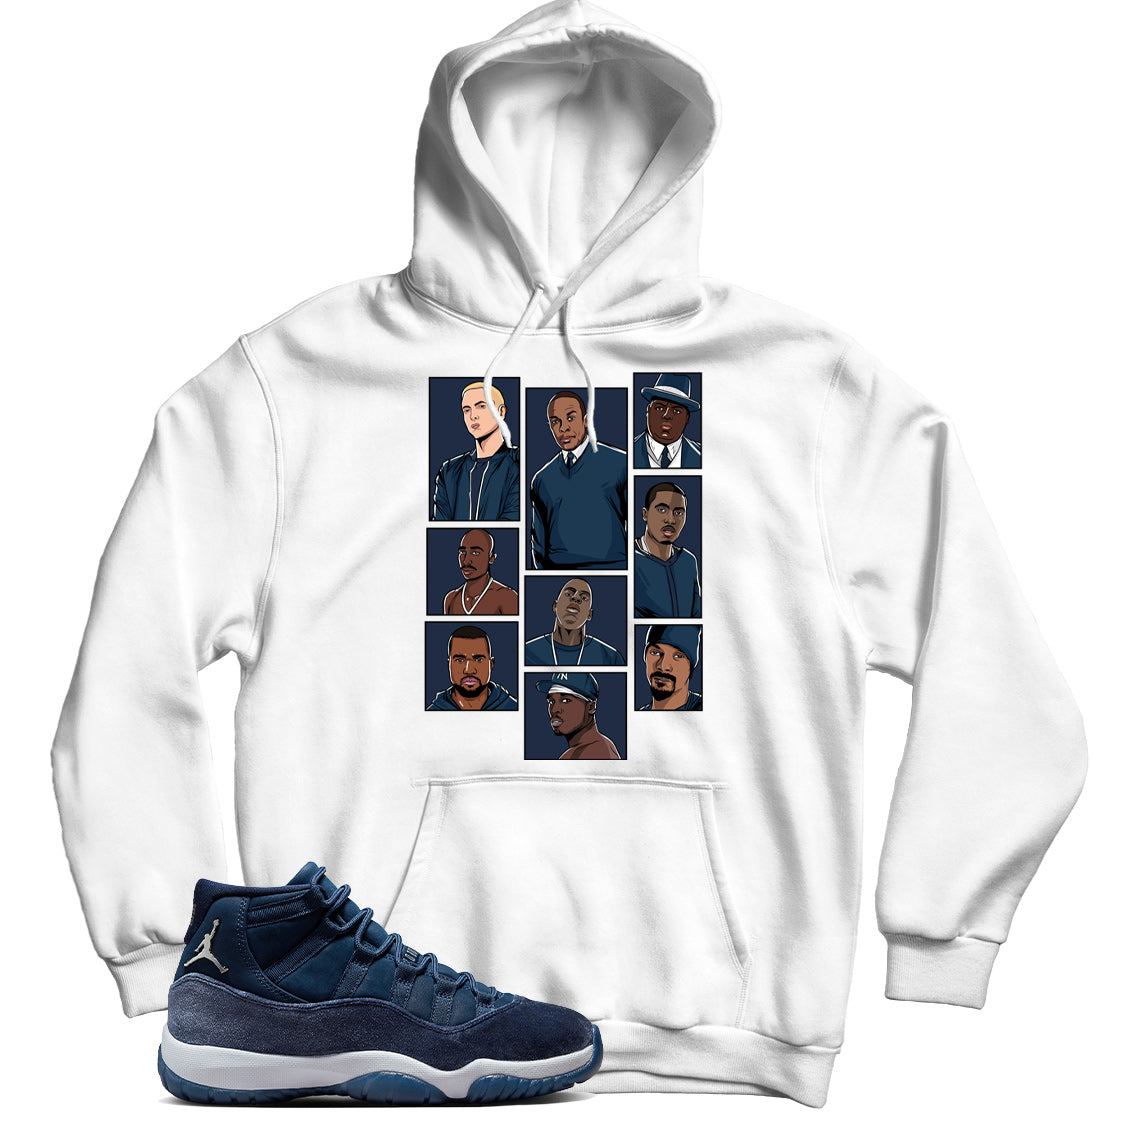 Jordan 11 Midnight Navy hoodie